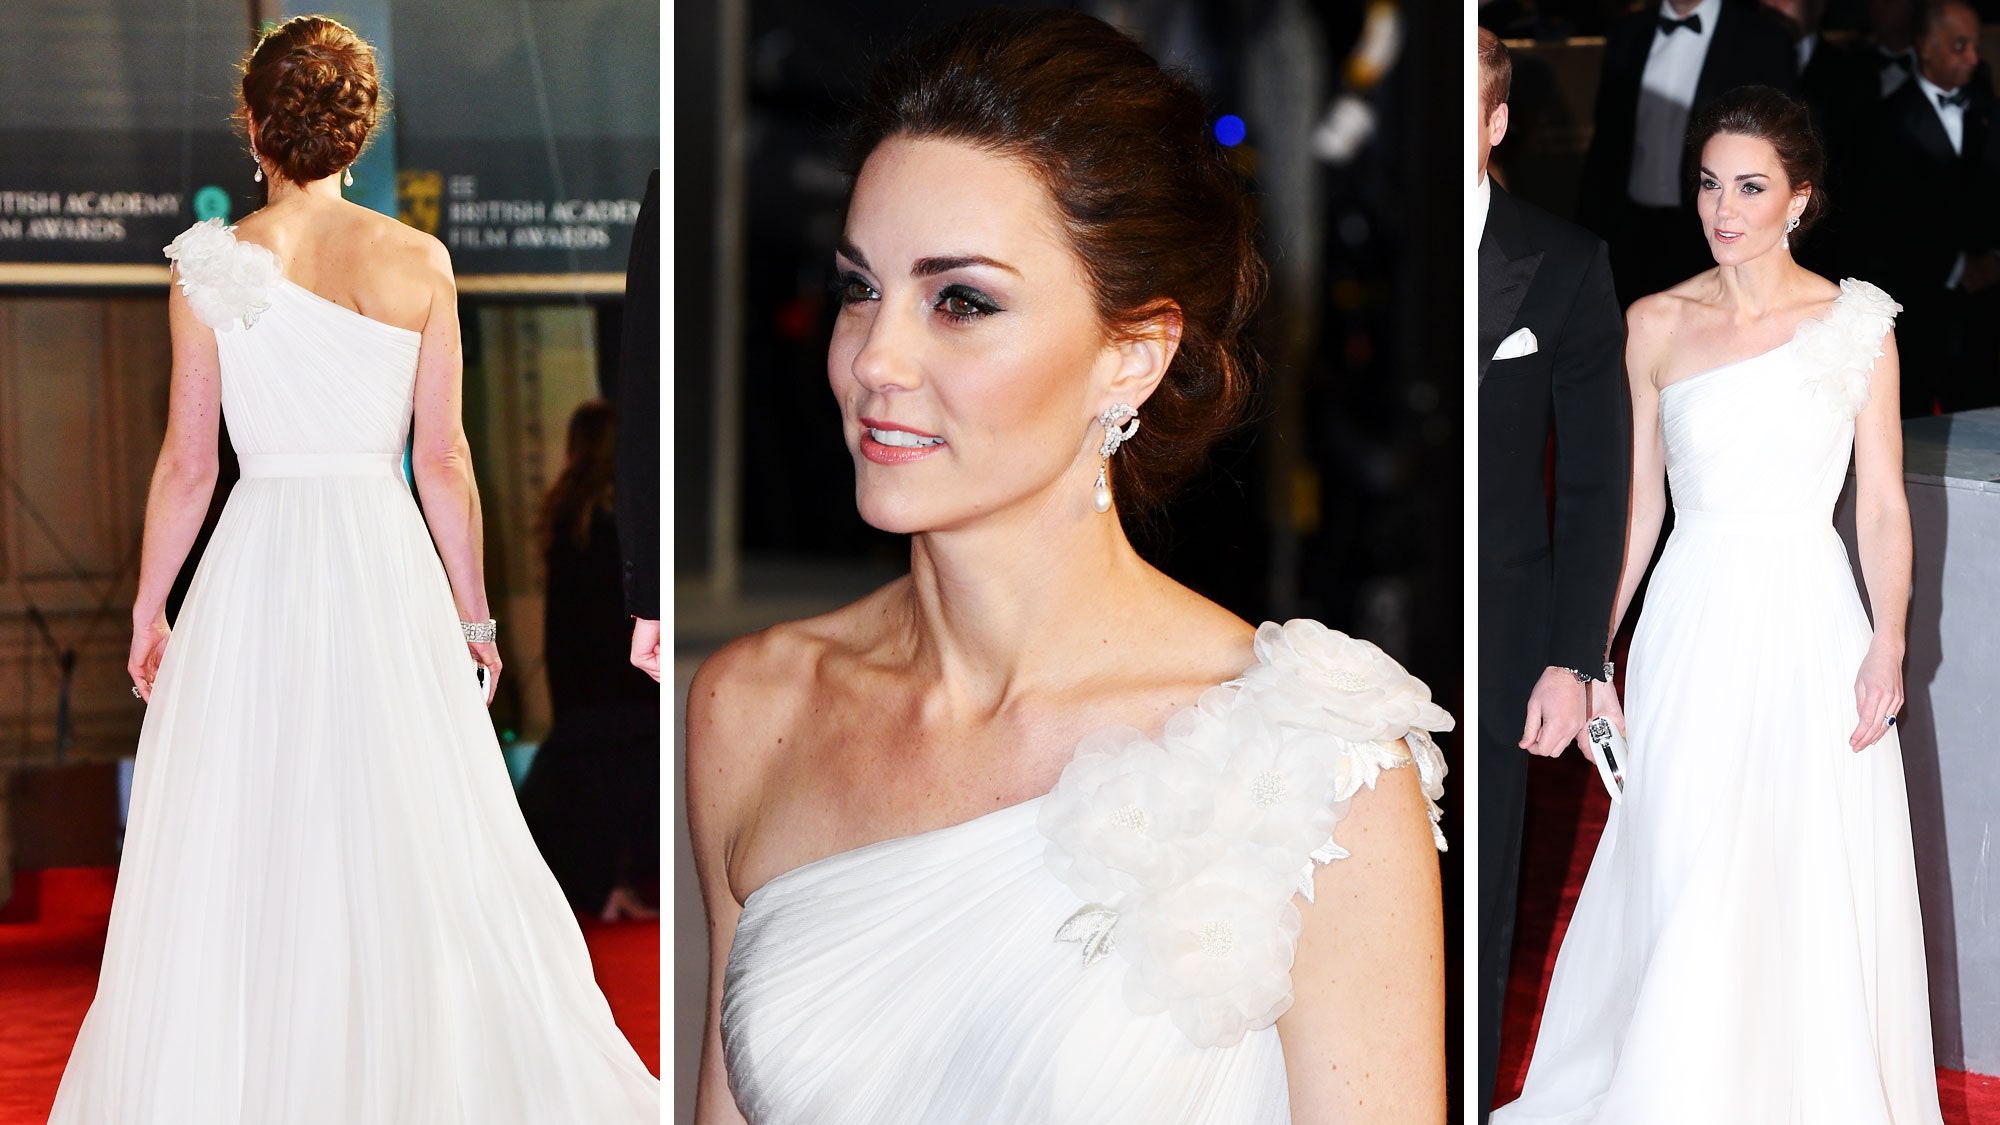 Theo trang Vanity Fair, vào năm 2019, cũng trên thảm đỏ của giải thưởng BAFTA, công nương Kate Middleton đã diện chiếc đầm này. Tuy nhiên, thời điểm đó cô không mang bao tay đen, phần vai cũng không đính kết 